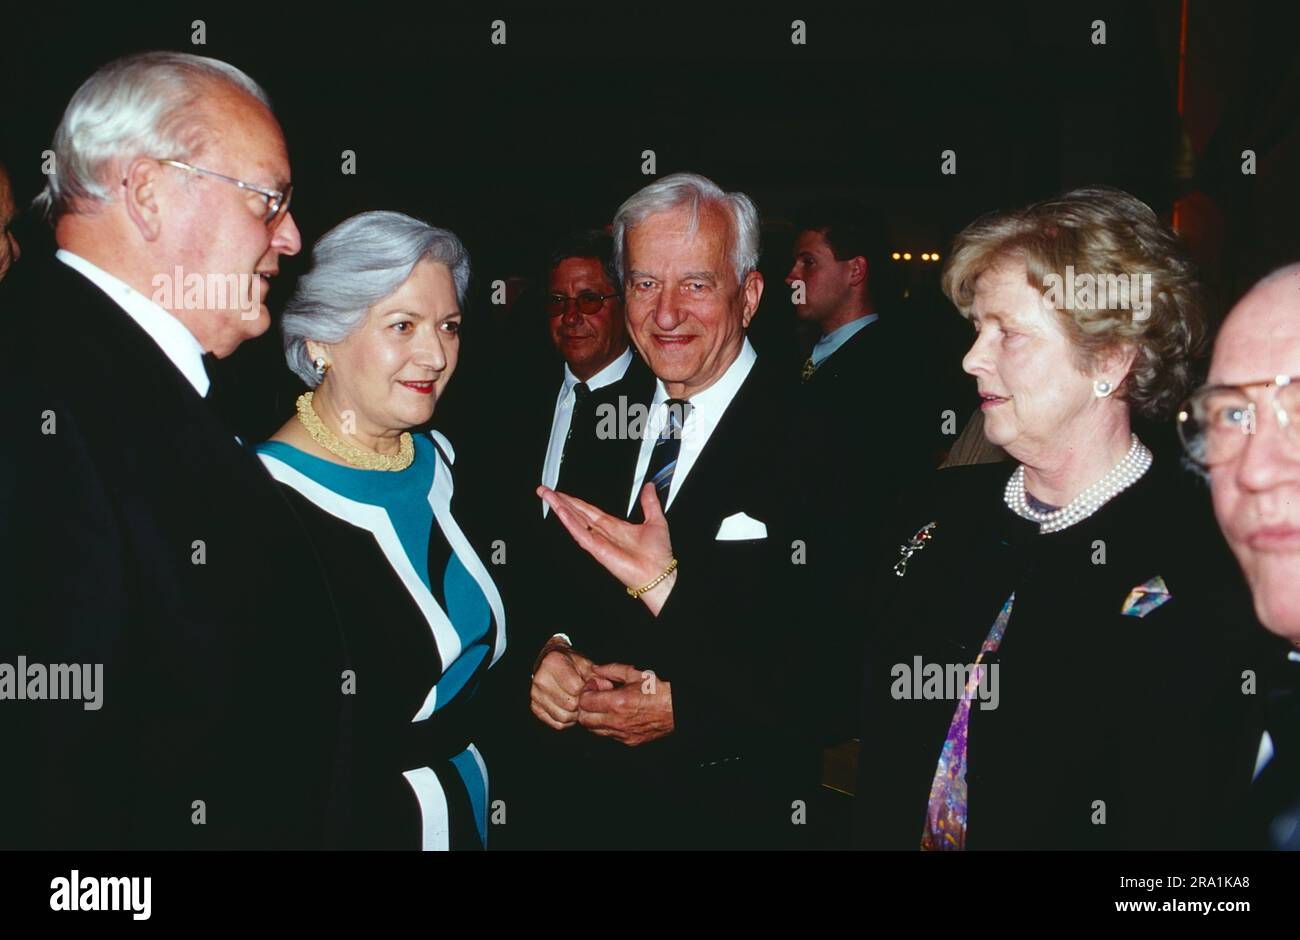 CDU Politiker Roman Herzog mit Ehefrau Christiane beim Gespräch mit Bundespräsident Richard von Weizsäcker und Ehefrau Marianne, Deutschland, circa 1990. Stock Photo